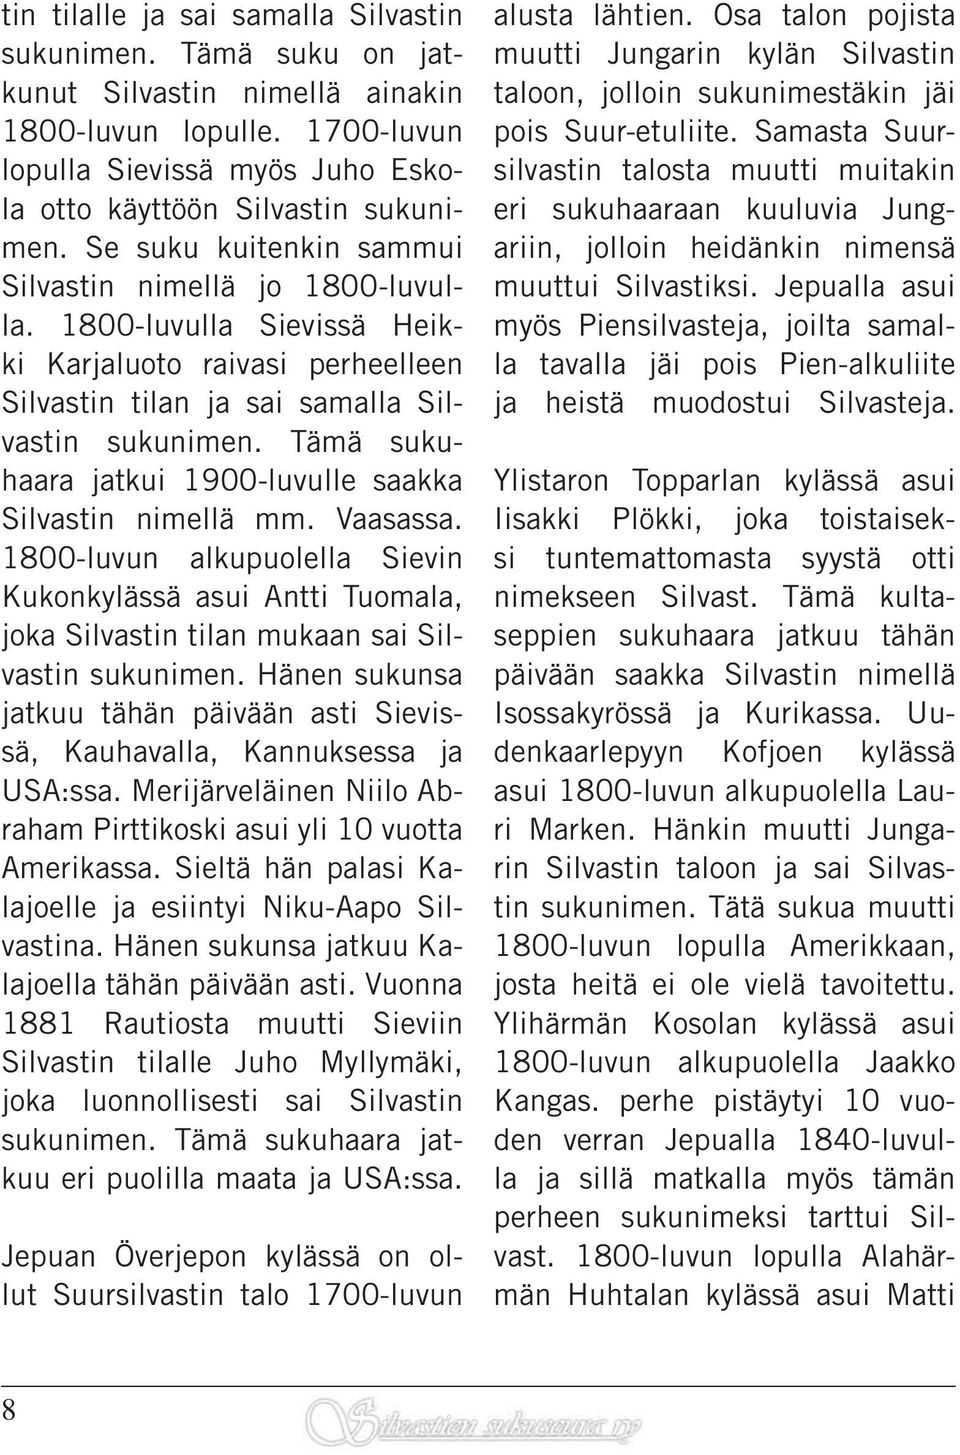 Tämä sukuhaara jatkui 1900-luvulle saakka Silvastin nimellä mm. Vaasassa. 1800-luvun alkupuolella Sievin Kukonkylässä asui Antti Tuomala, joka Silvastin tilan mukaan sai Silvastin sukunimen.